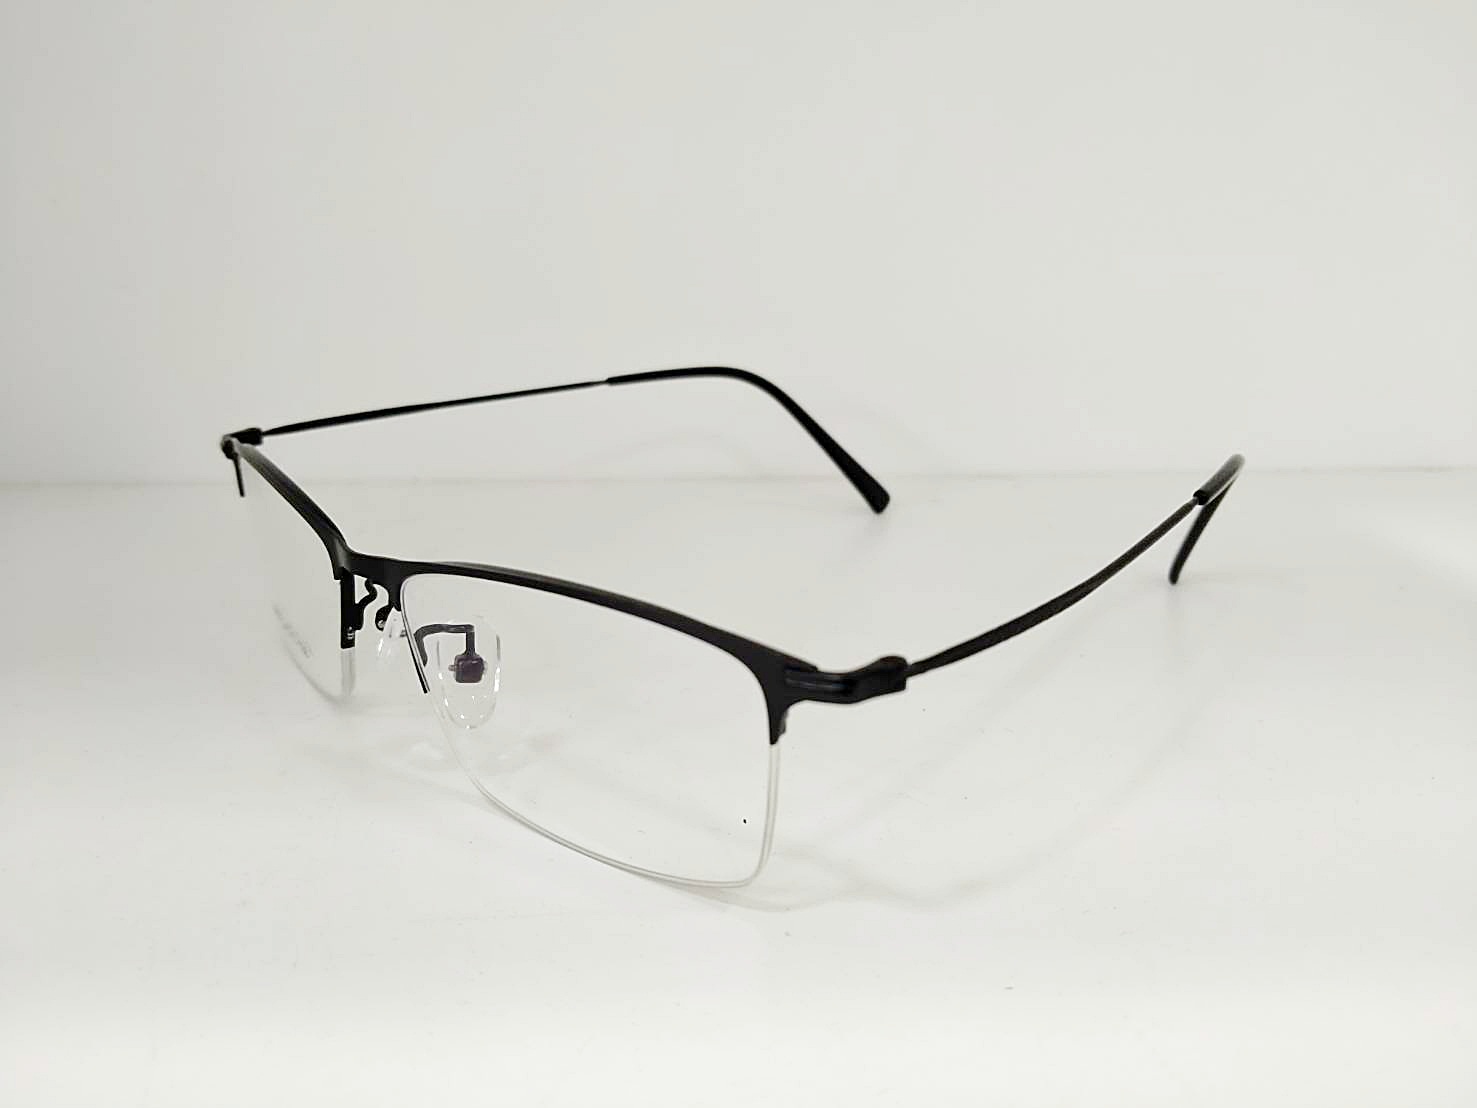 แว่นสายตายาว แว่นตาอ่านหนังสือ แว่นตัด ตัดแว่น กรอบพร้อมเลนส์ออโต้เปลี่ยนสี(AUTO LANS) กรองแสง ป้องกันแสงสีฟ้า คอม มือถือ แสงUV400 คมชัด